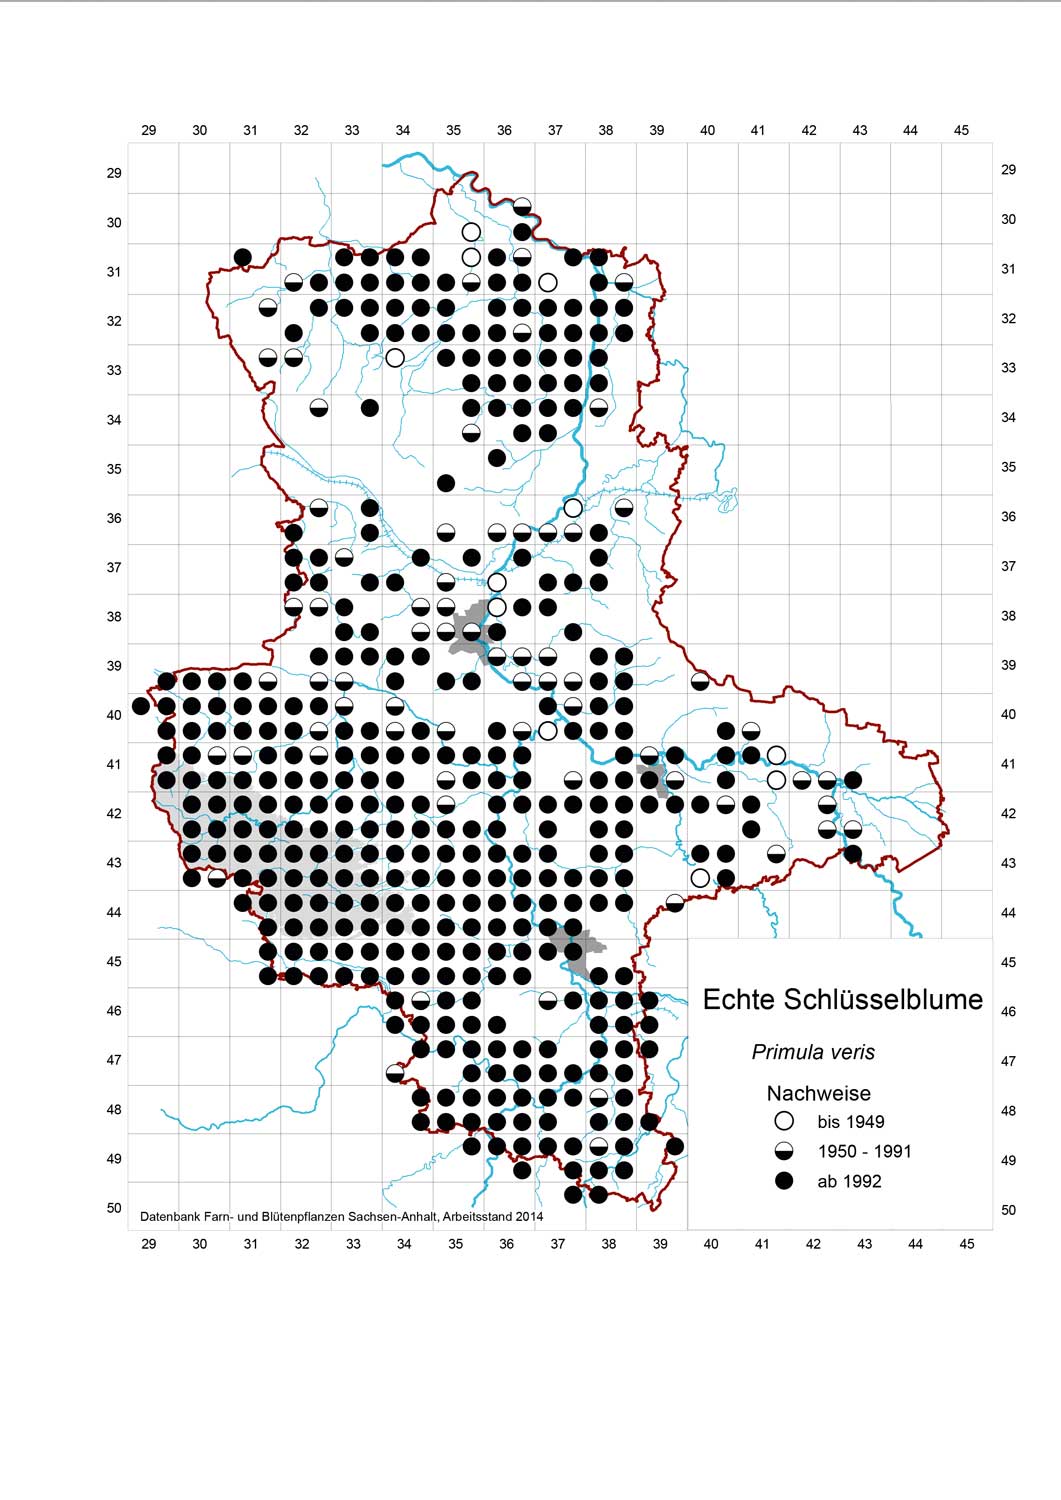 Rasterkarte Verbreitung der Echten Schlüsselblume, Auszug aus der Datenbank Blütenpflanzen, Teil Sachsen-Anhalt, des Landesamtes für Umweltschutz. Veröffentlichung mit freundlicher Genehmigung.